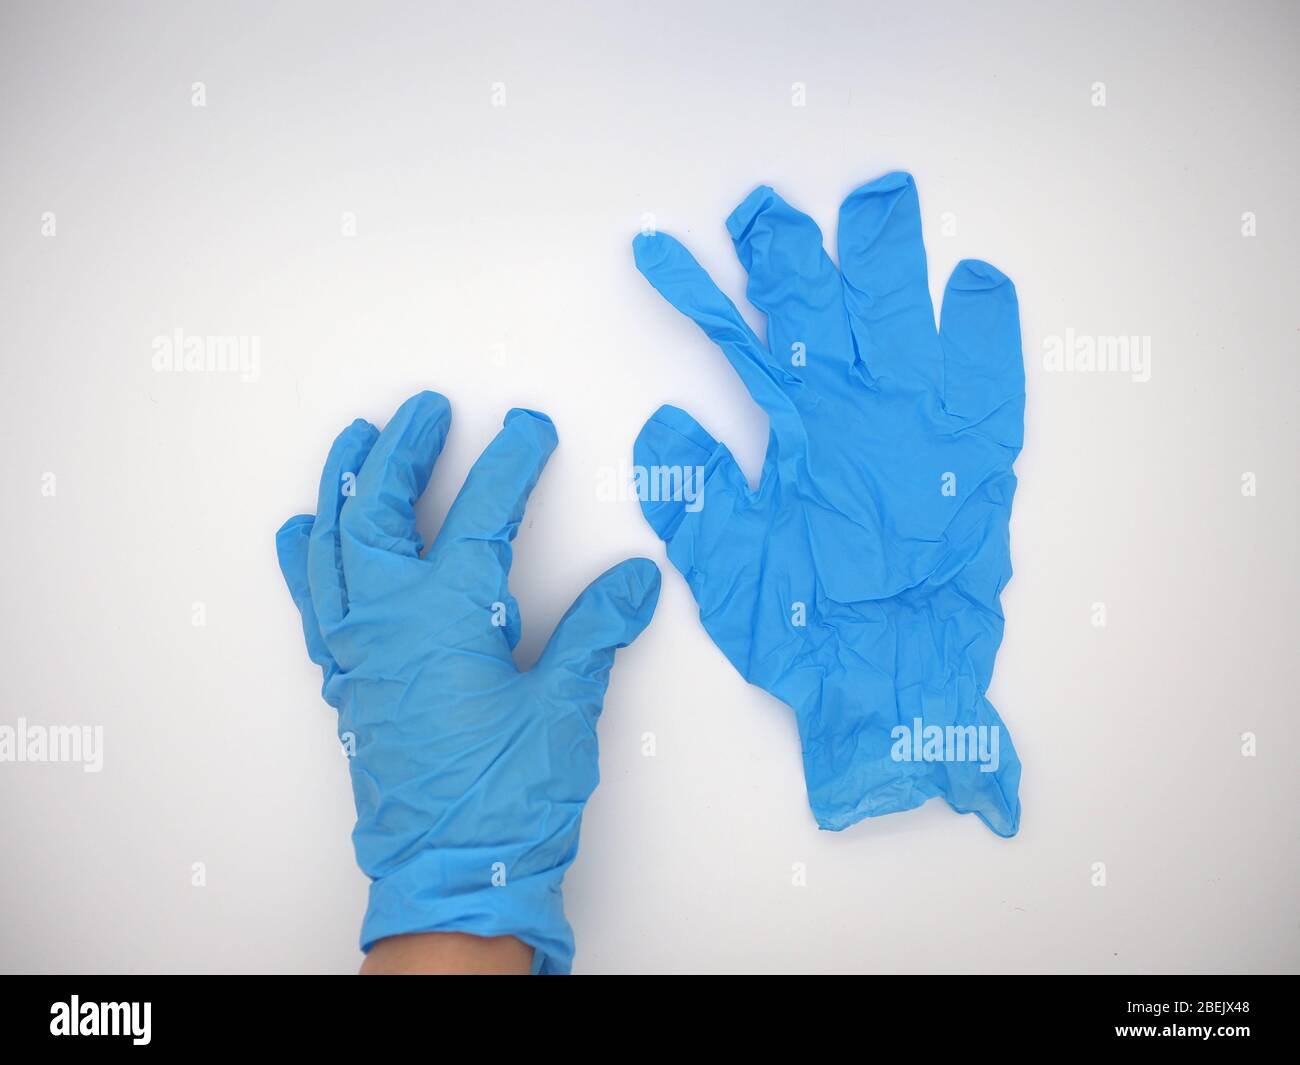 Aprile 2020, mano che indossa UN guanto monouso blu che raccoglie un altro guanto monouso blu , Londra, Regno Unito Foto Stock